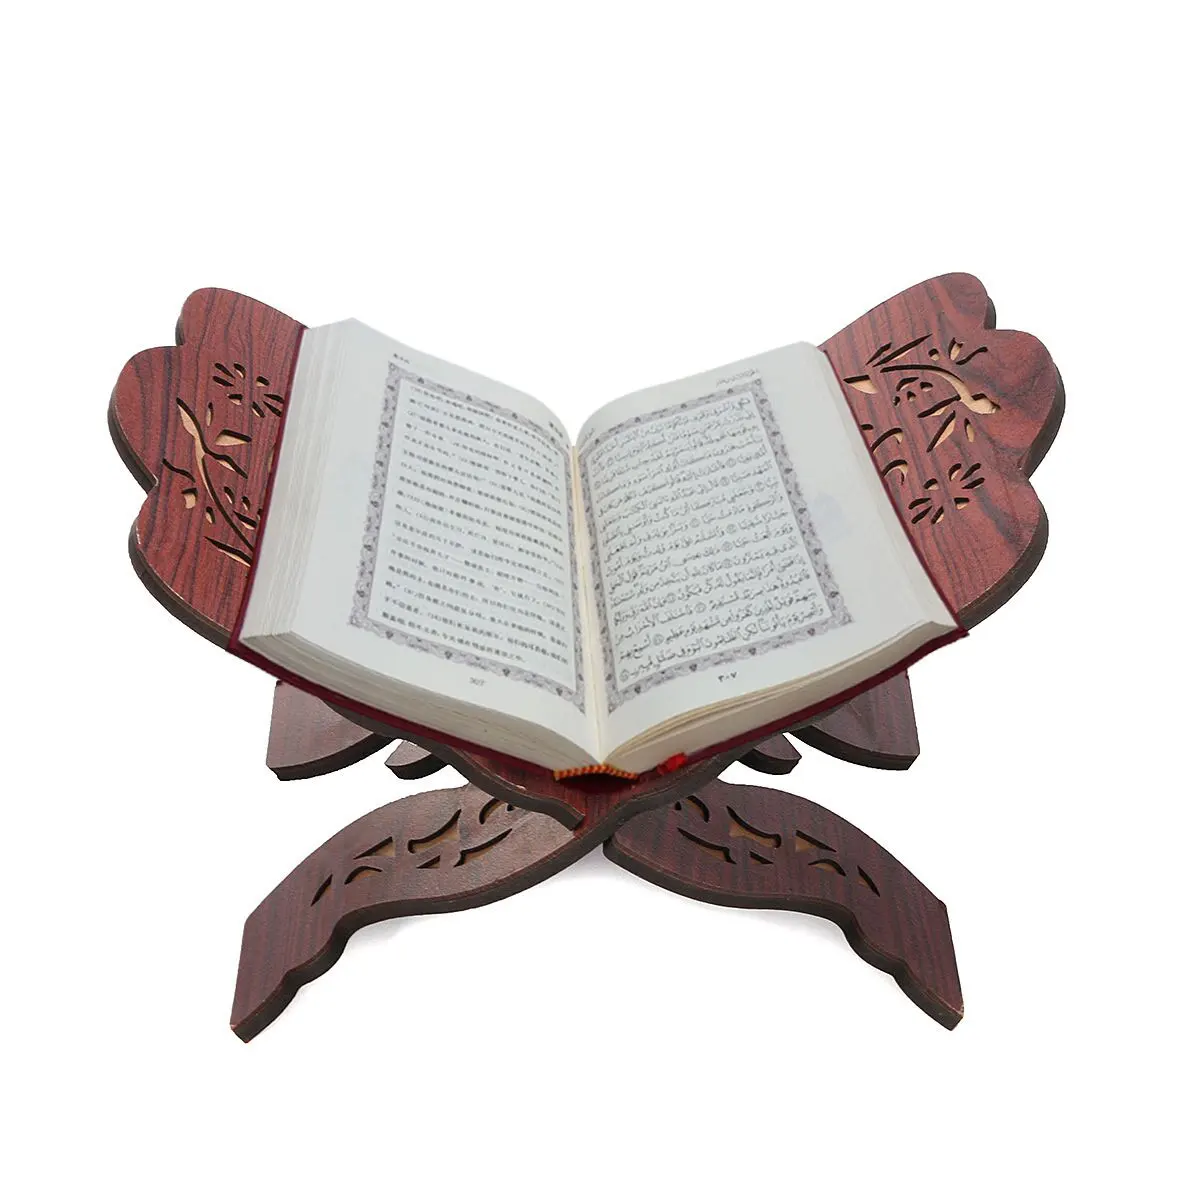 28x20x15 см деревянный держатель для книг Мусульманский Коран Рамадан Алла Исламский подарок для книг съемный ручной работы деревянная книга украшения